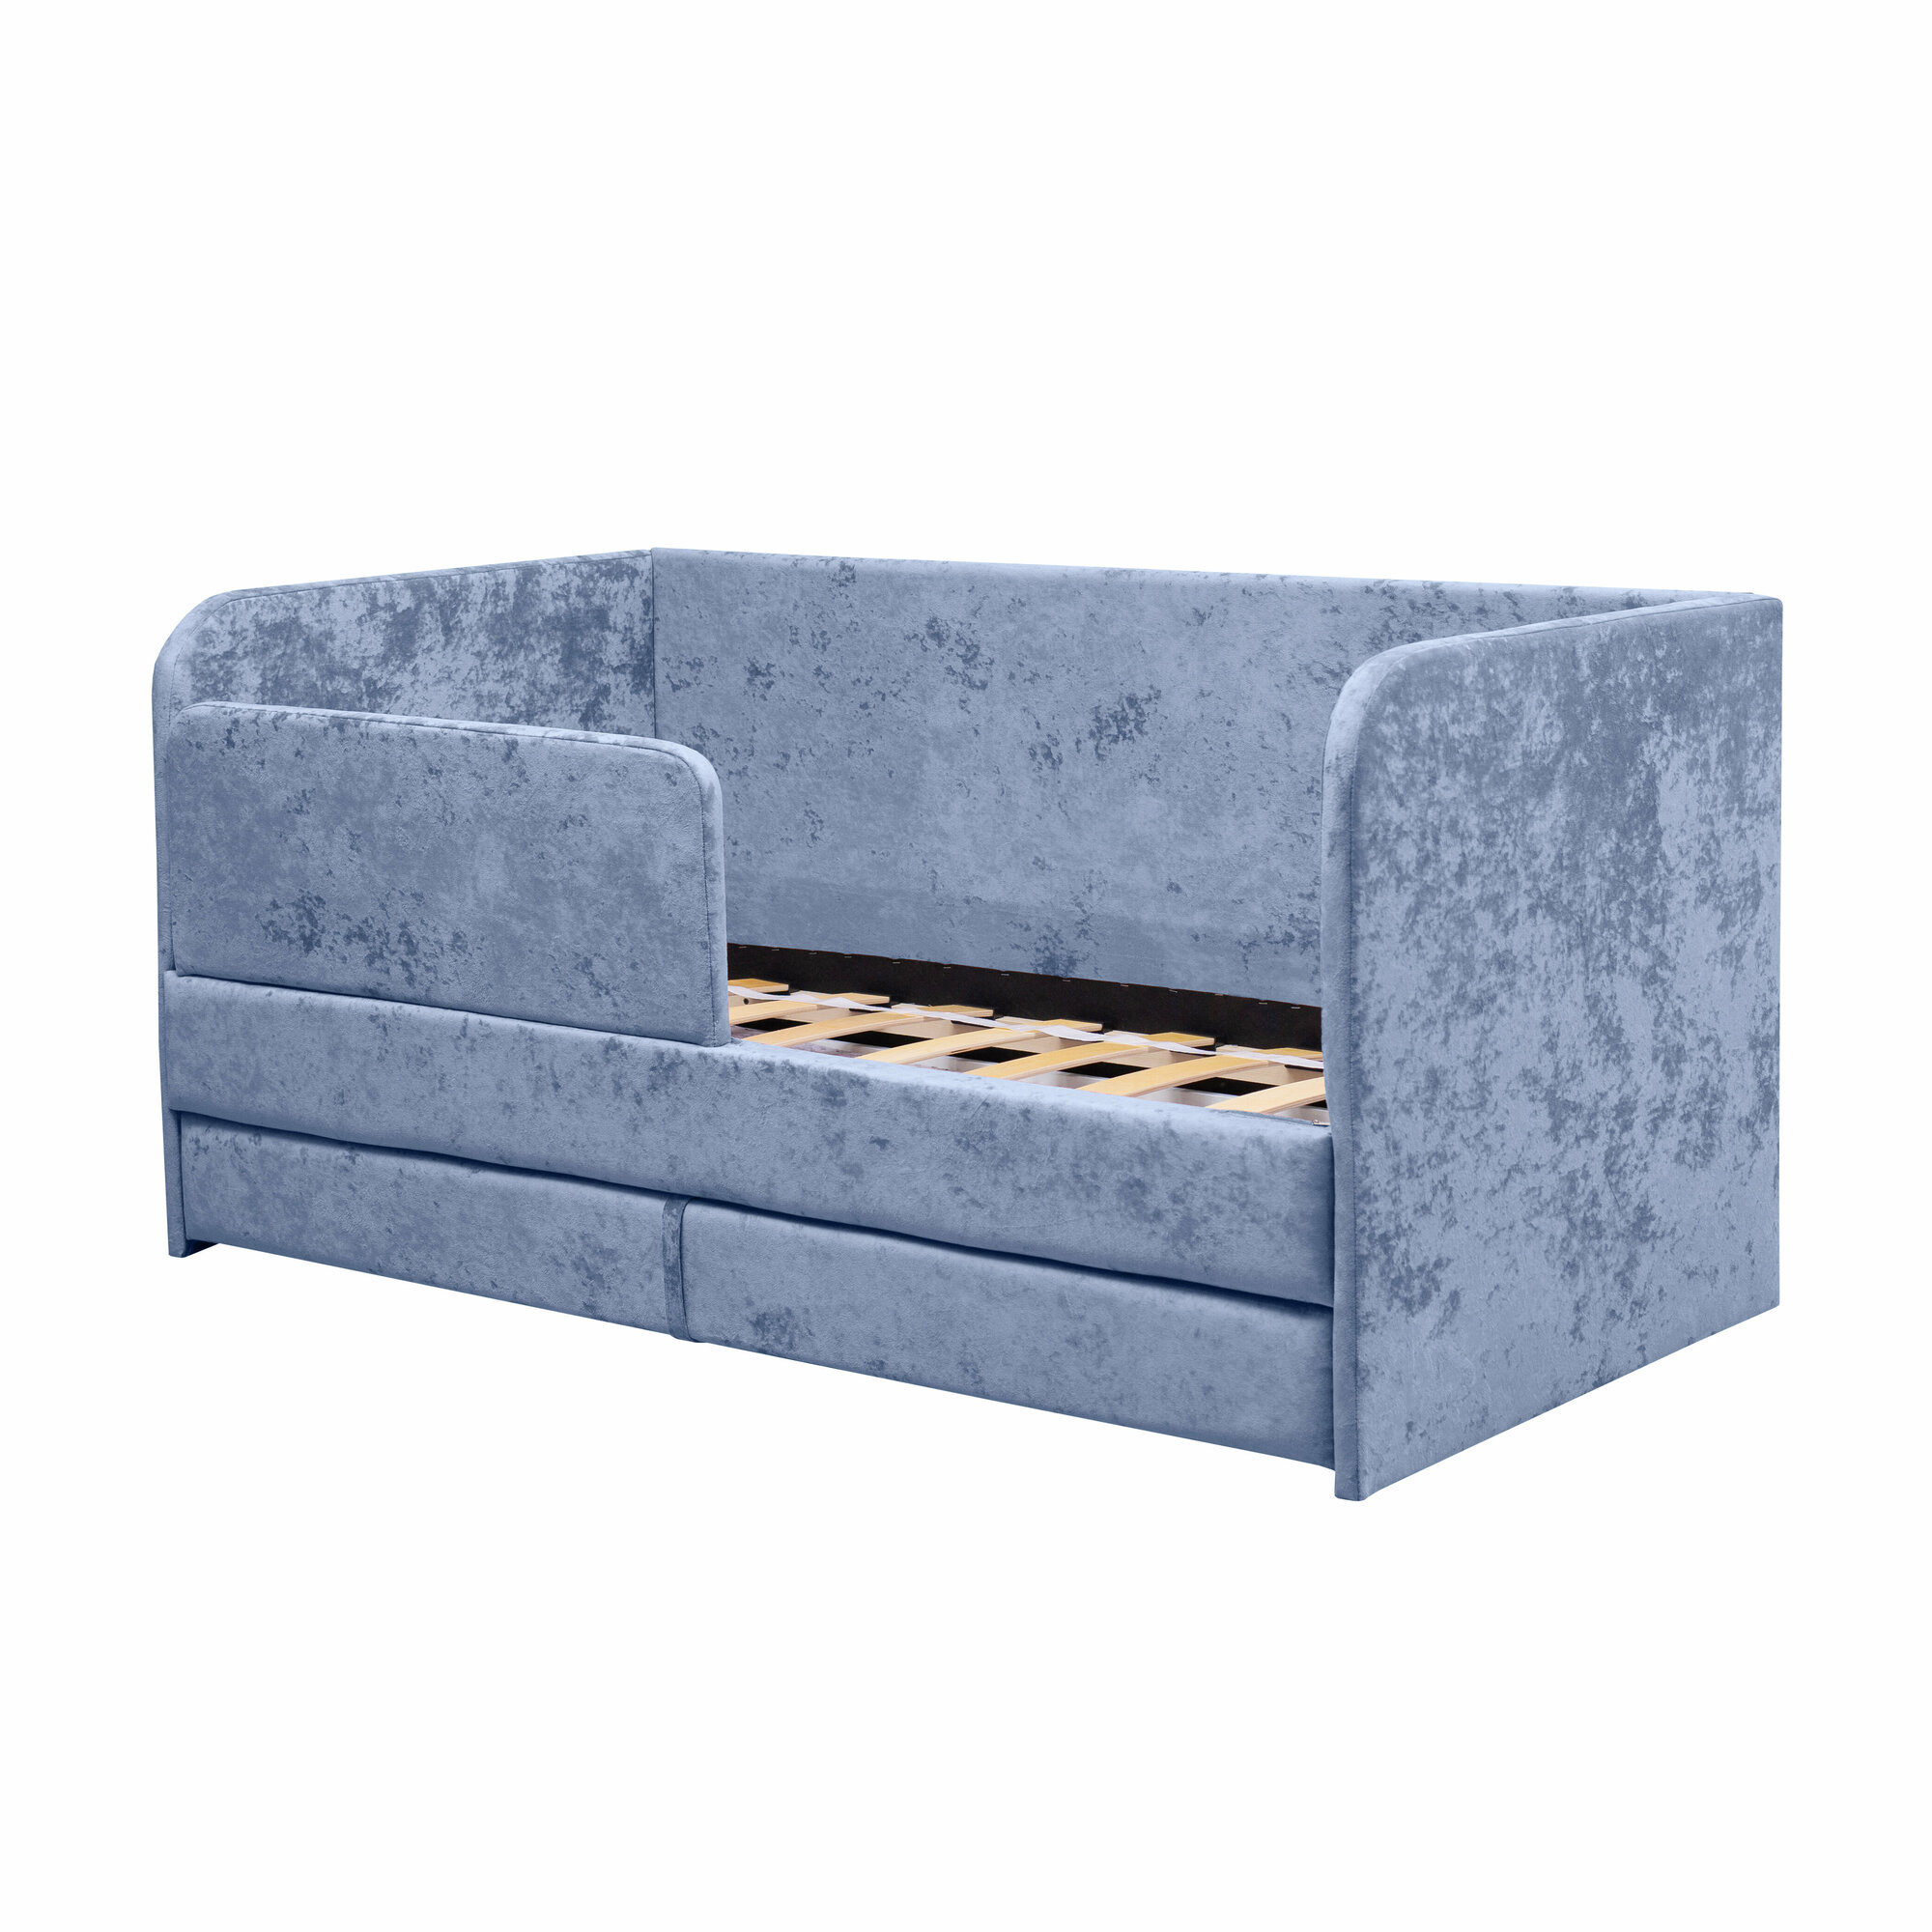 Кровать-диван Непоседа 160*80 голубой с дополнительным спальным местом+матрас